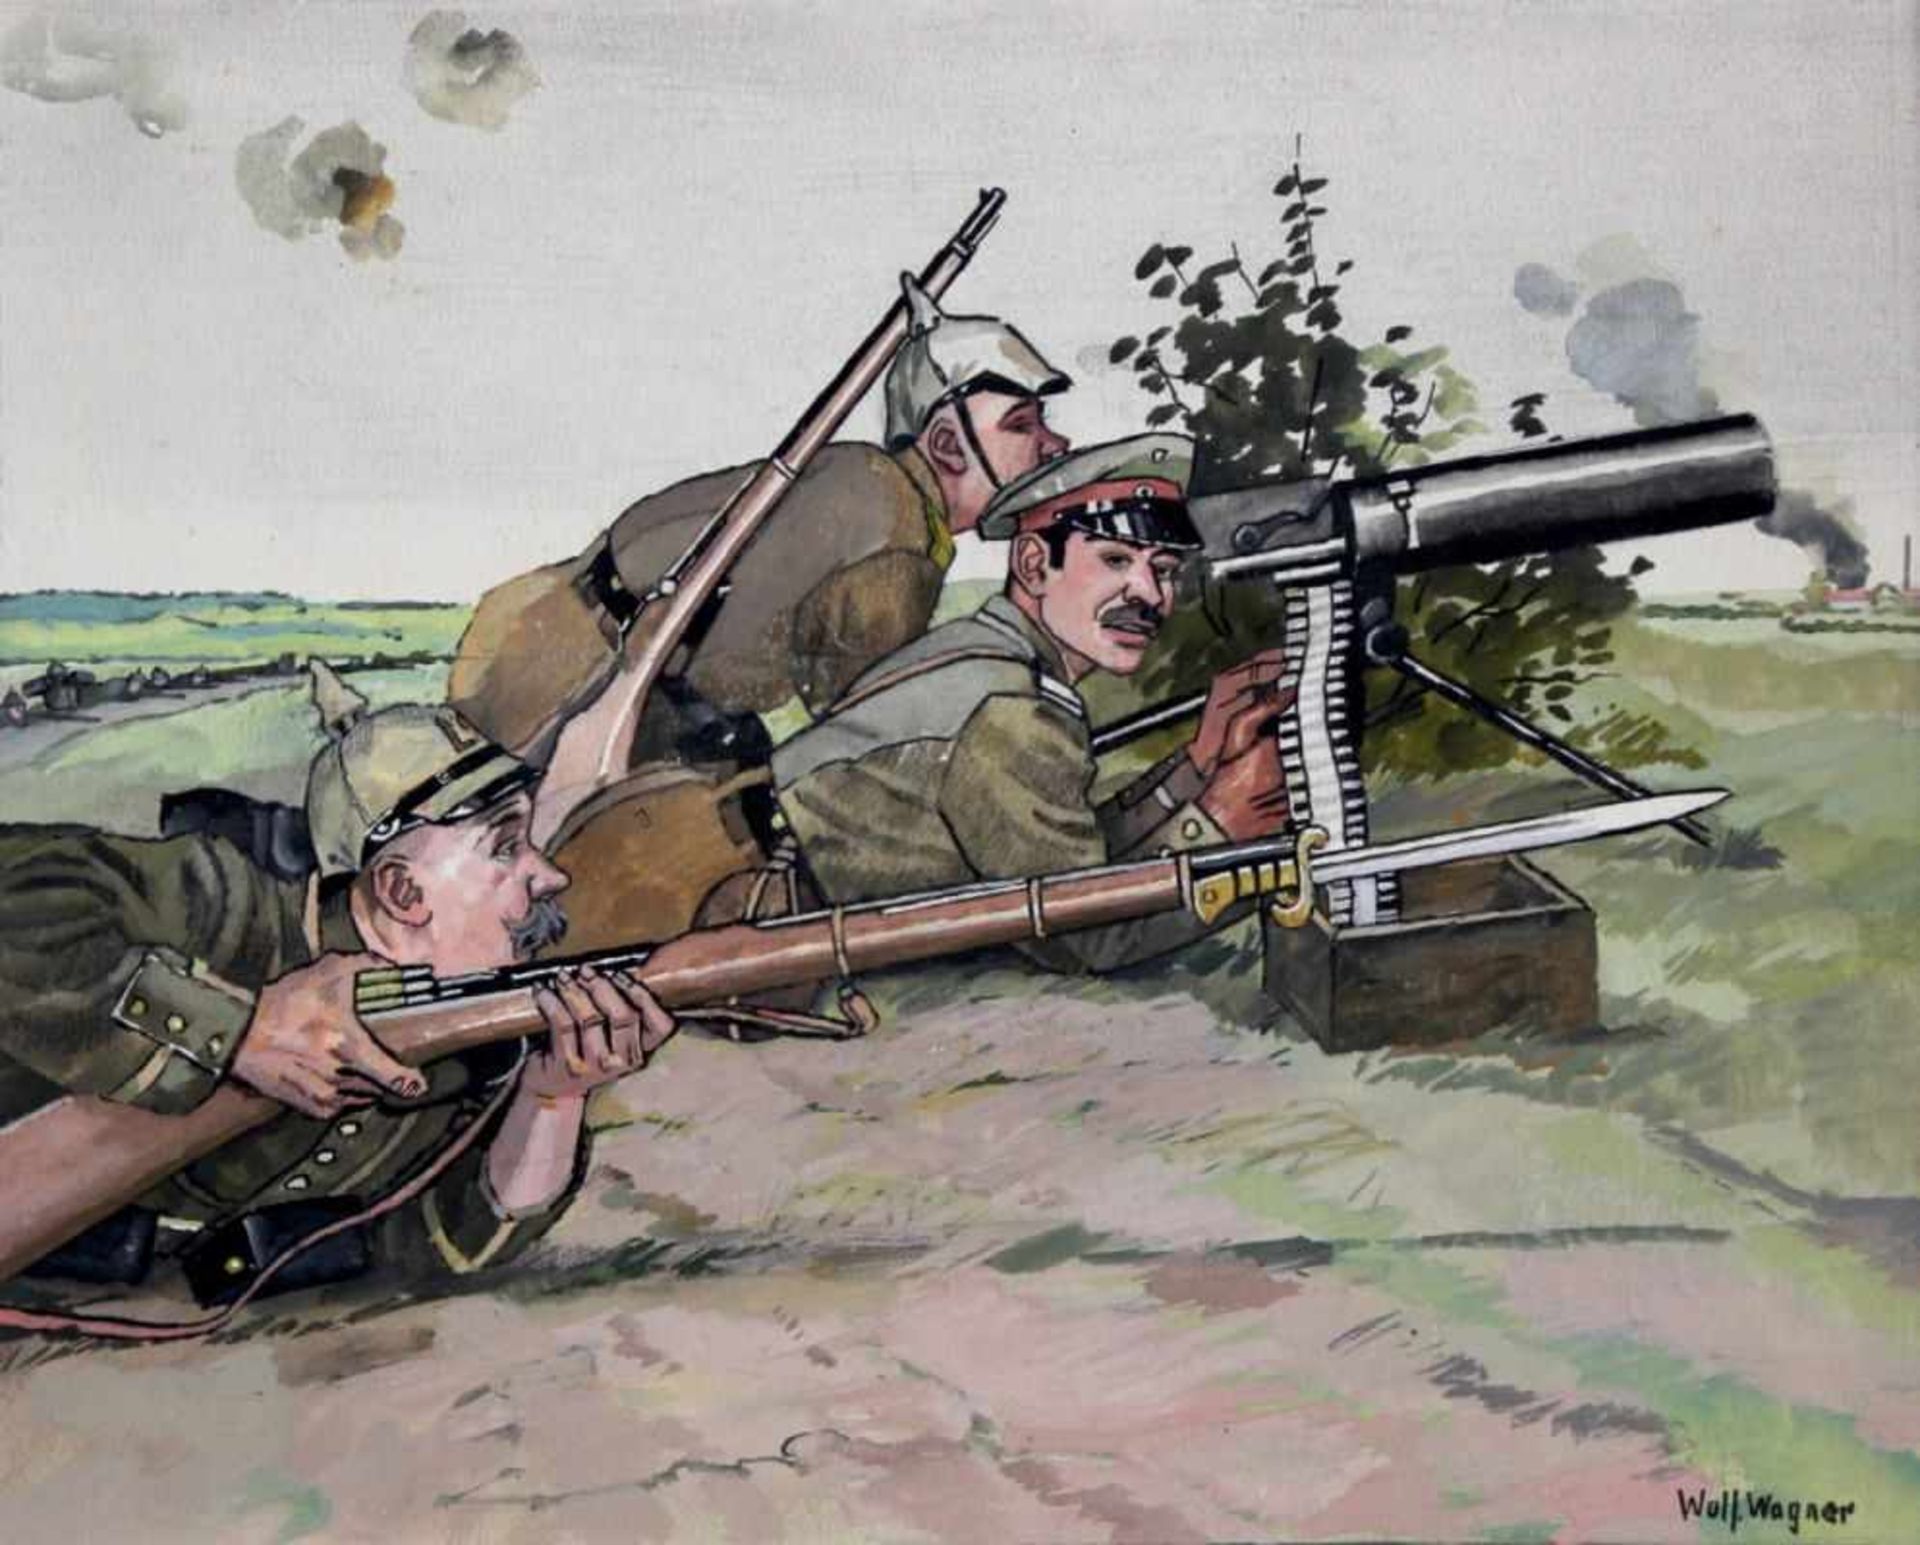 Zeichnung - Wolfgang WAGNER (1884 Furth im Wald - 1931 München Pasing) "Soldaten im Krieg", r.u.